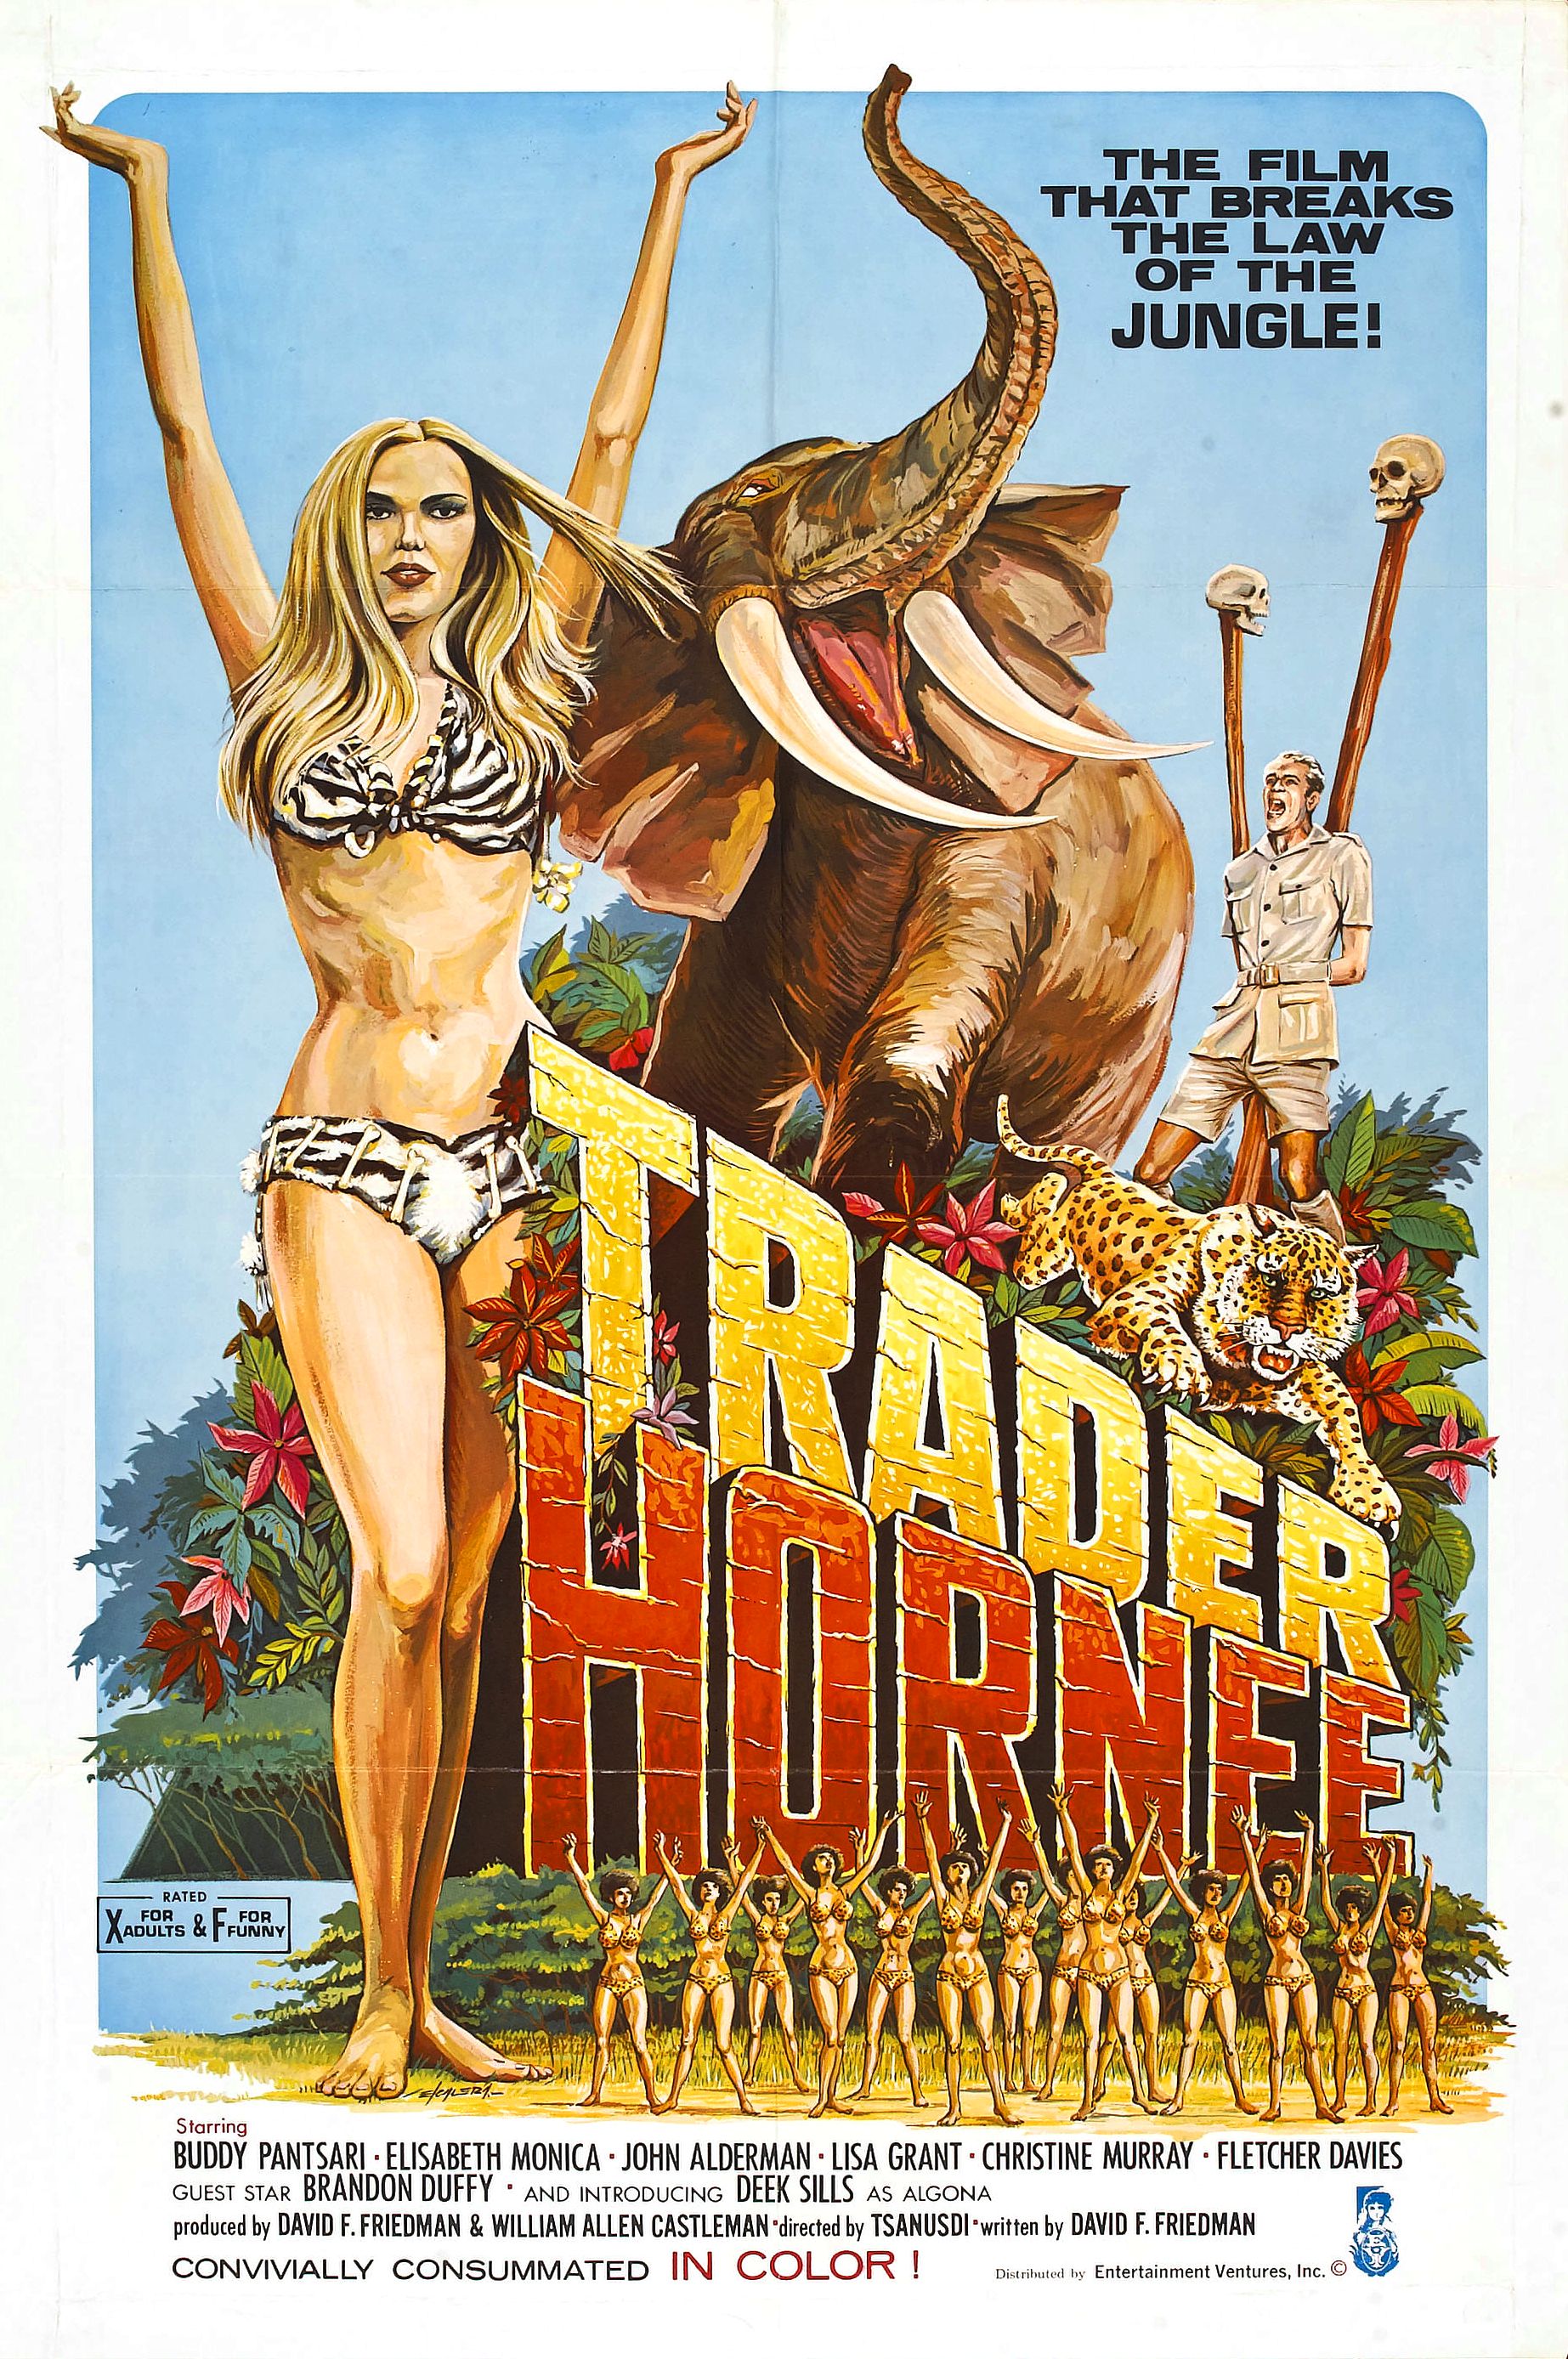 Trader Hornee (1970) Screenshot 3